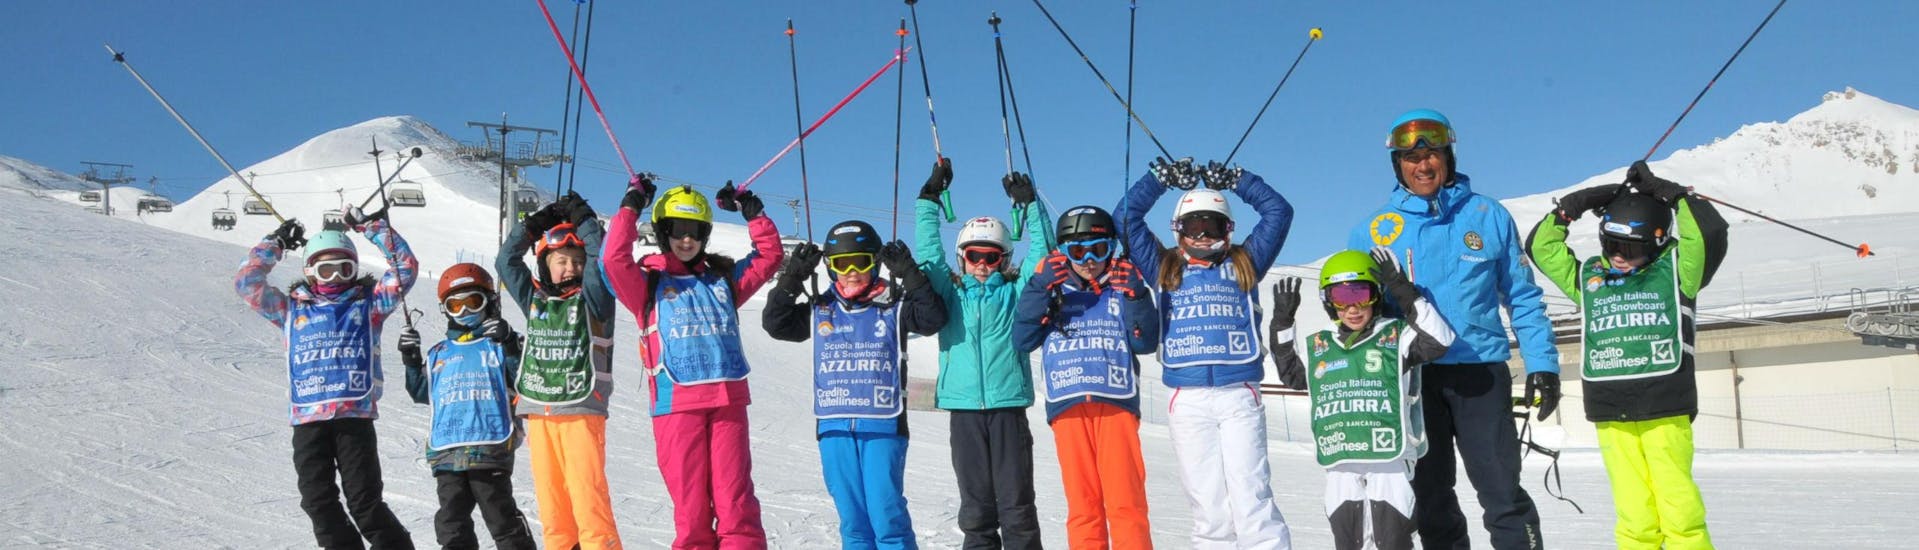 Un gruppo di bambini si diverte con le Lezioni di sci per bambini (4-14 anni) - Giornaliere con la scuola di sci Scuola di Sci Azzurra Livigno sulle piste da sci di Livigno.